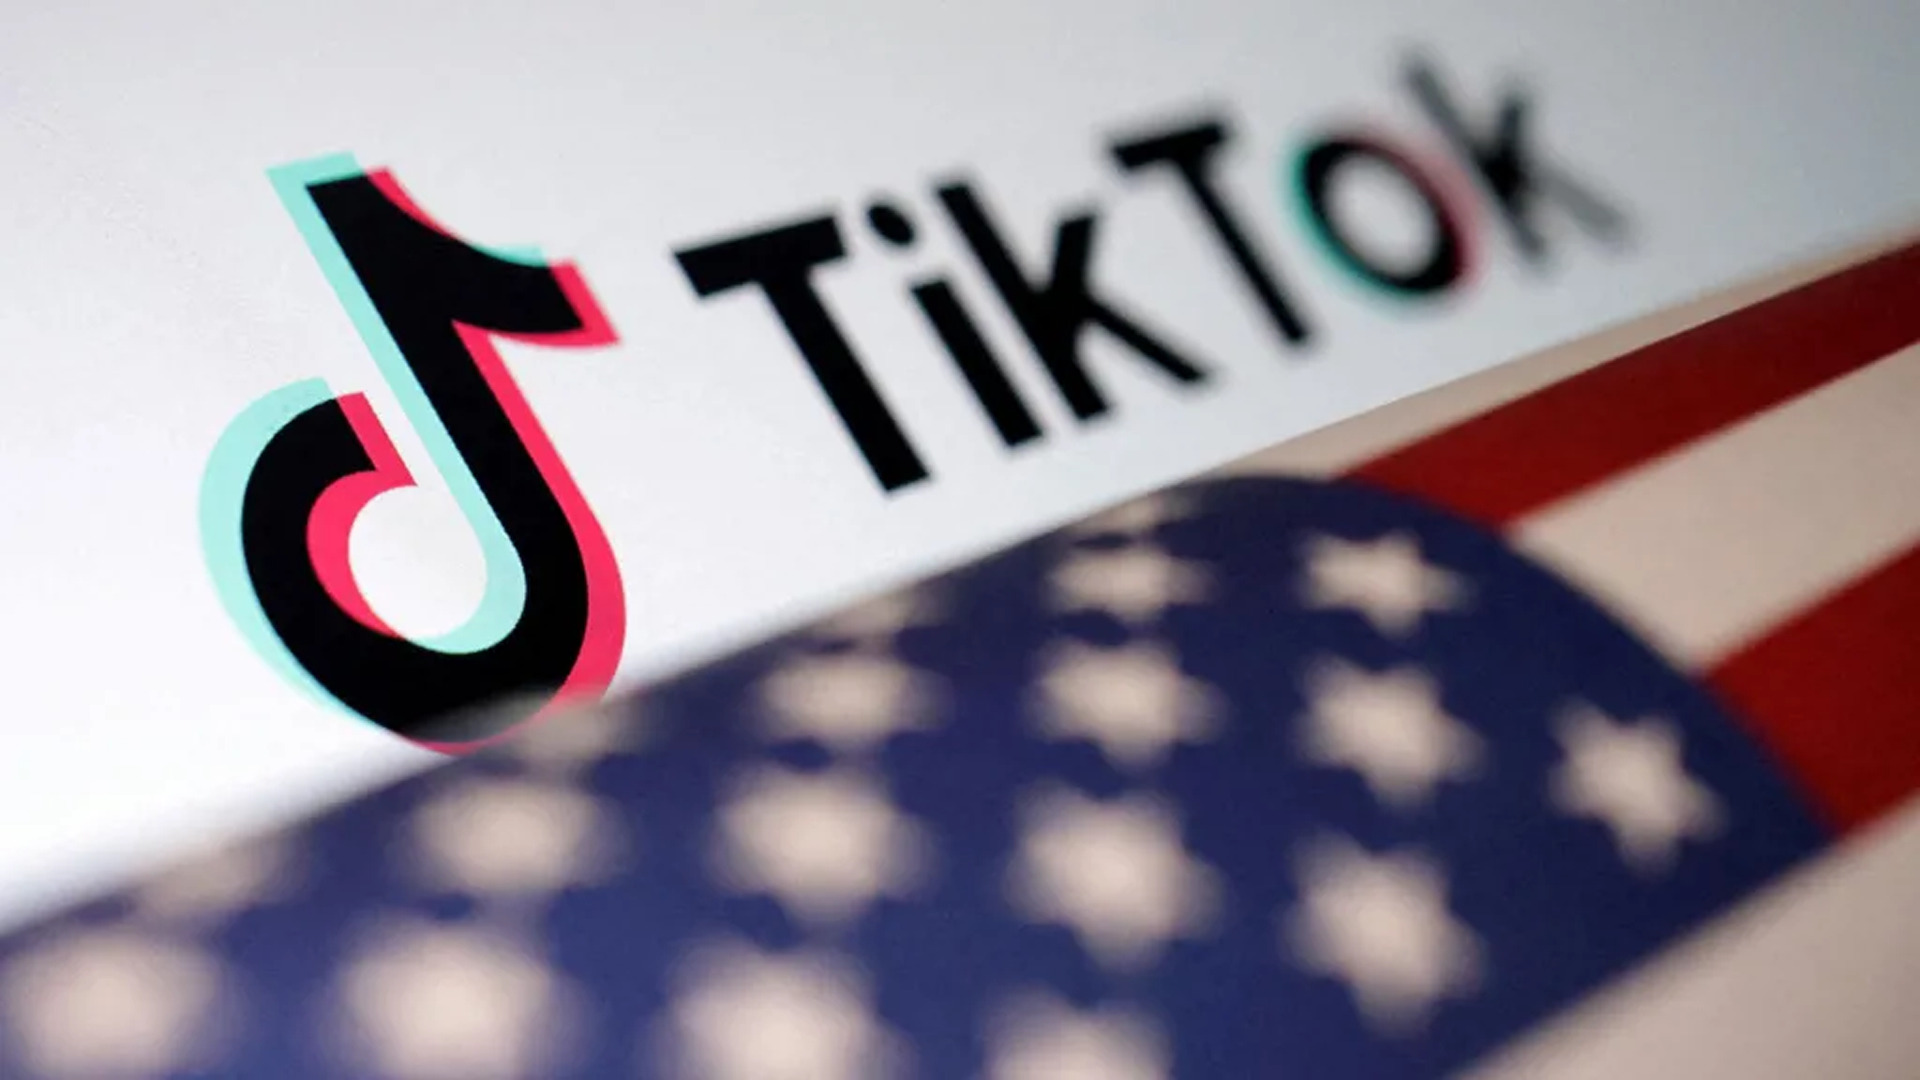 Запрет TikTok в США может вступить в силу менее чем через год